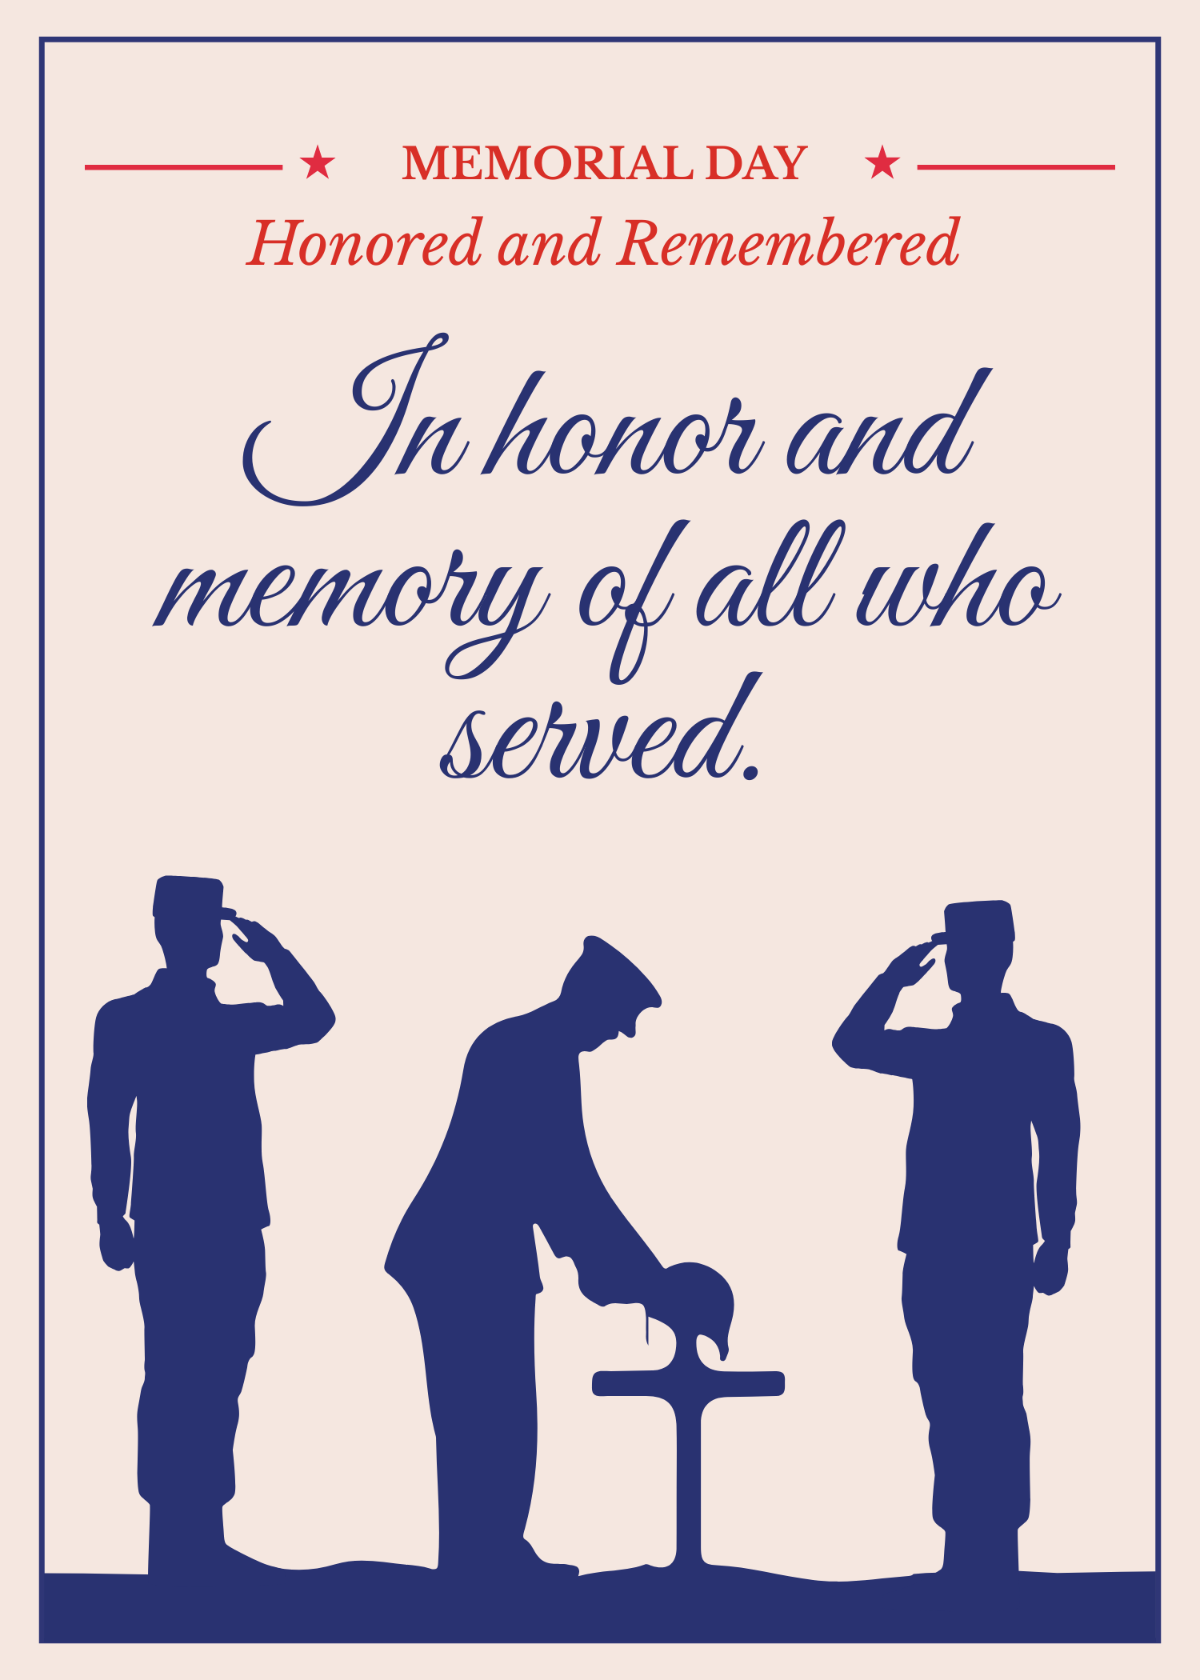 Memorial Day Honor Card Template